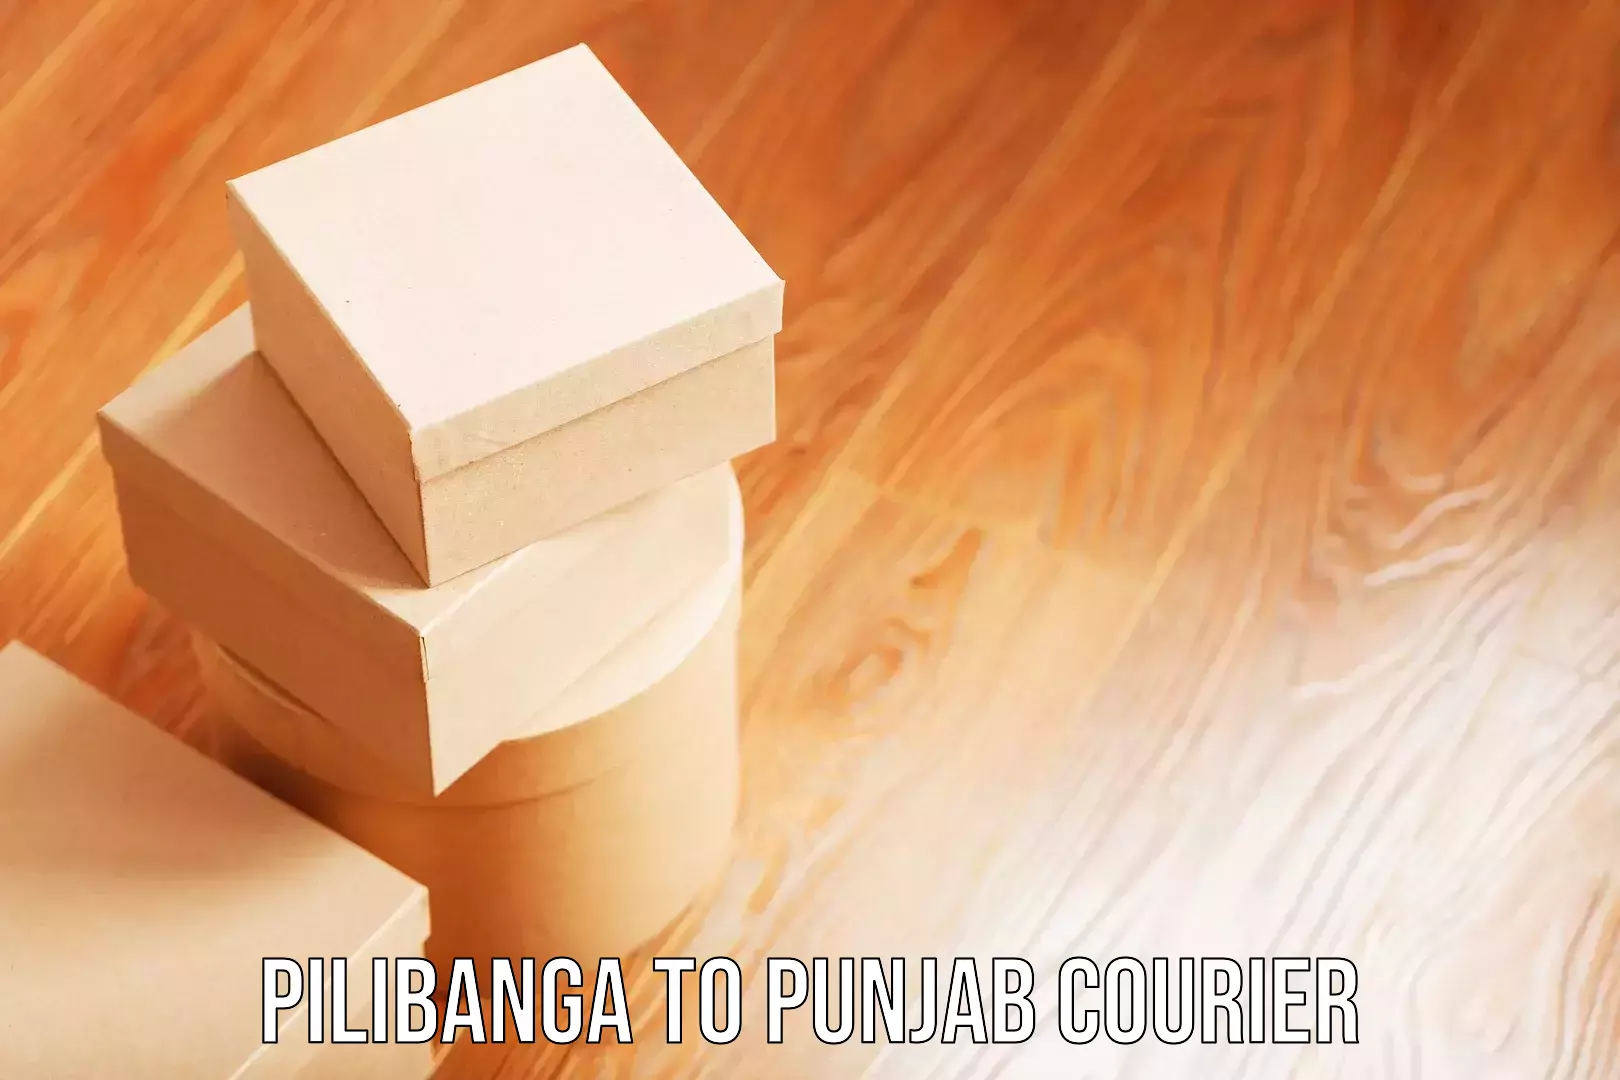 Reliable baggage delivery Pilibanga to Jhunir